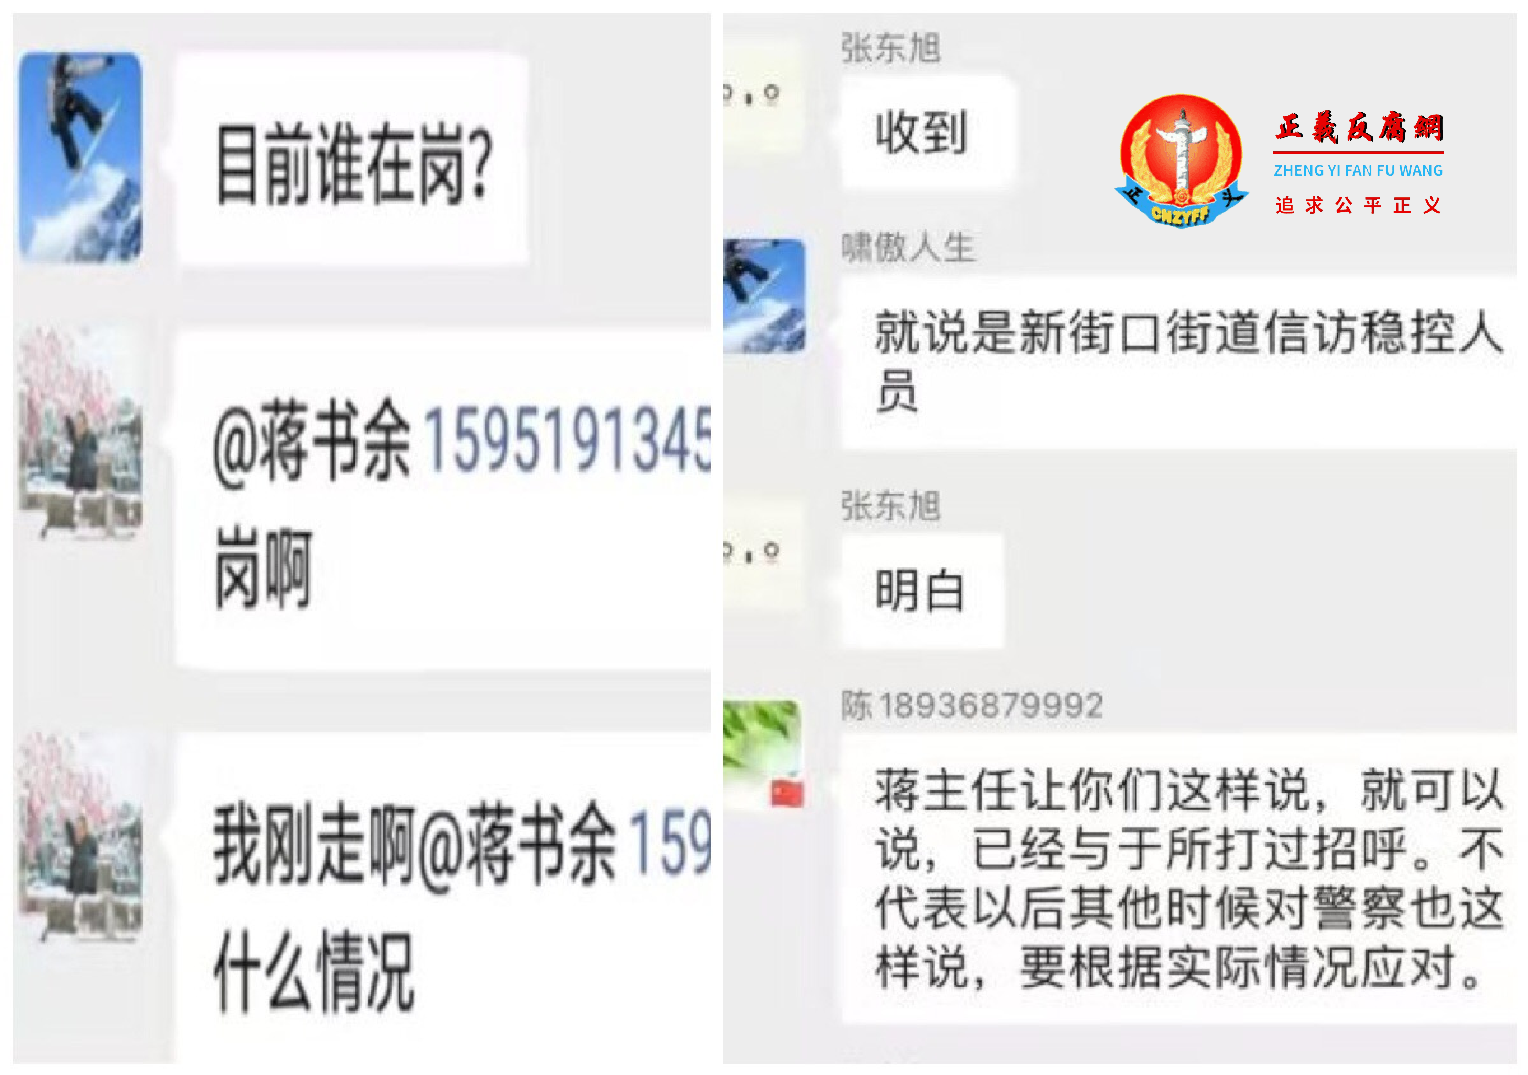 南京新街口街道维稳人员的聊天记录。.png